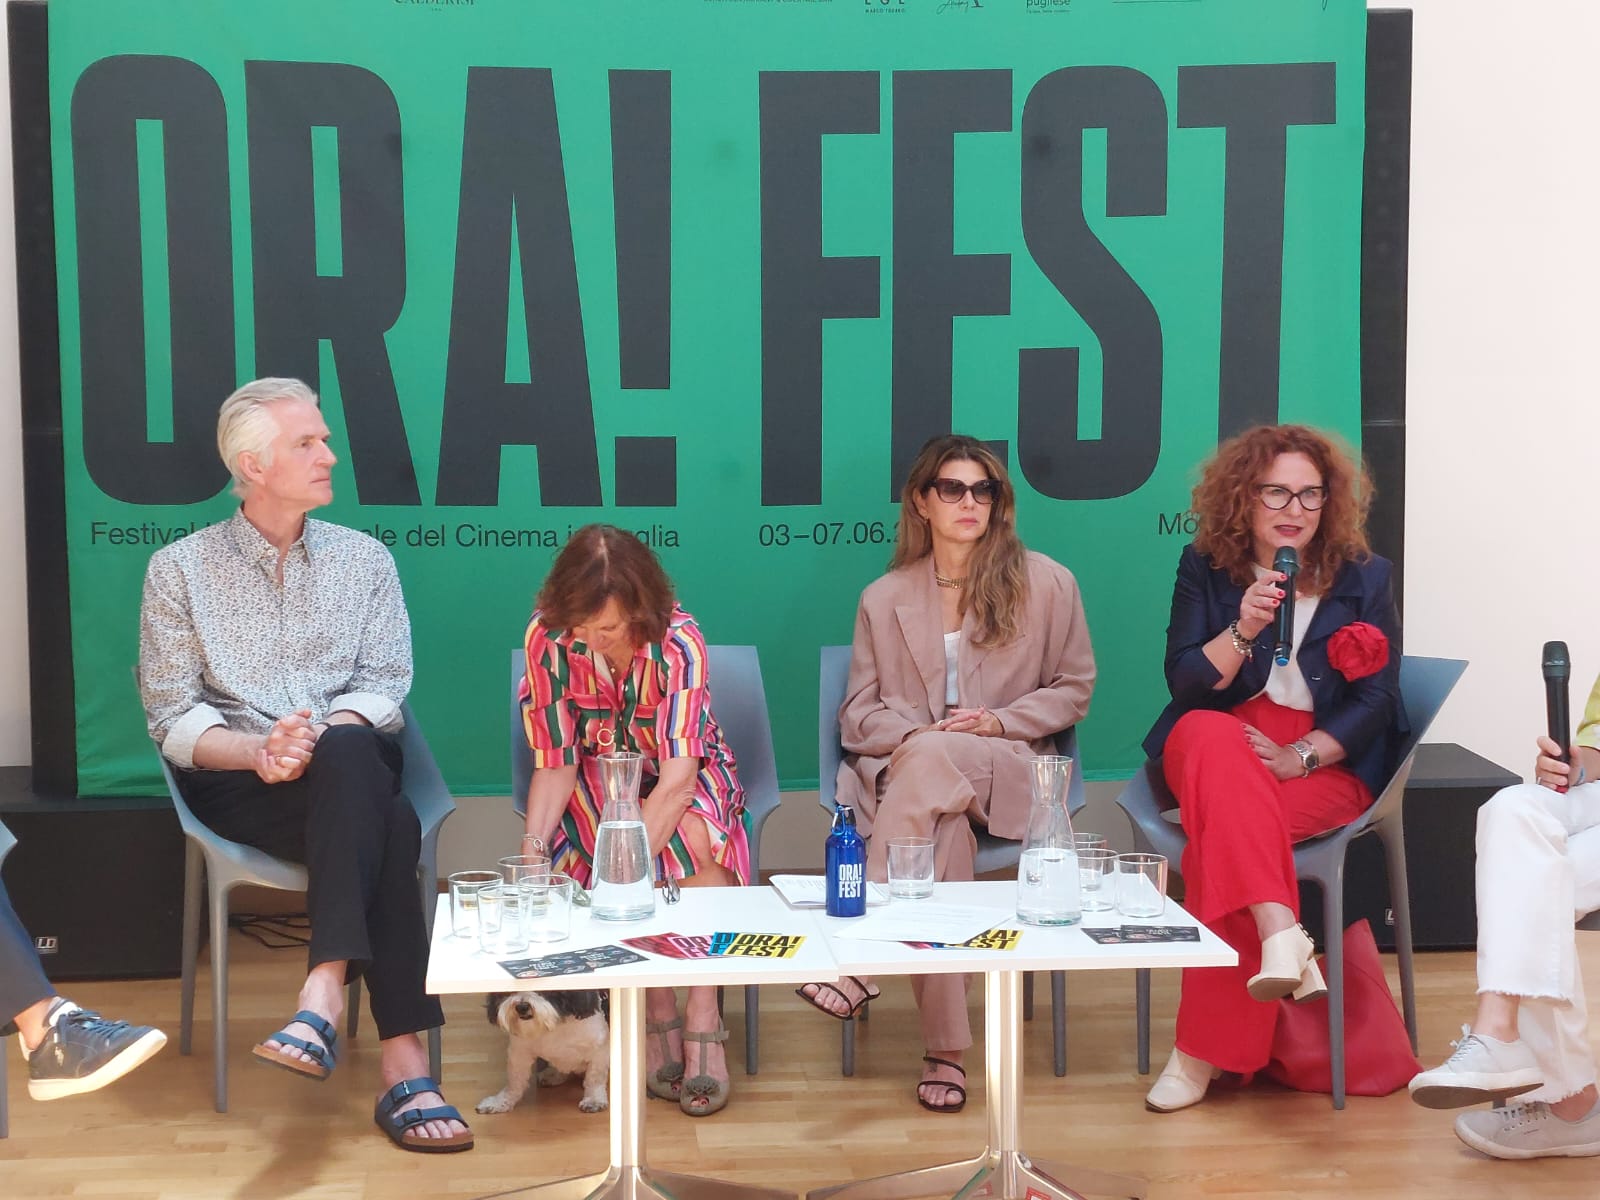 Galleria ORA! FEST, parte oggi a Monopoli il Festival Internazionale del Cinema in Puglia - Diapositiva 4 di 4